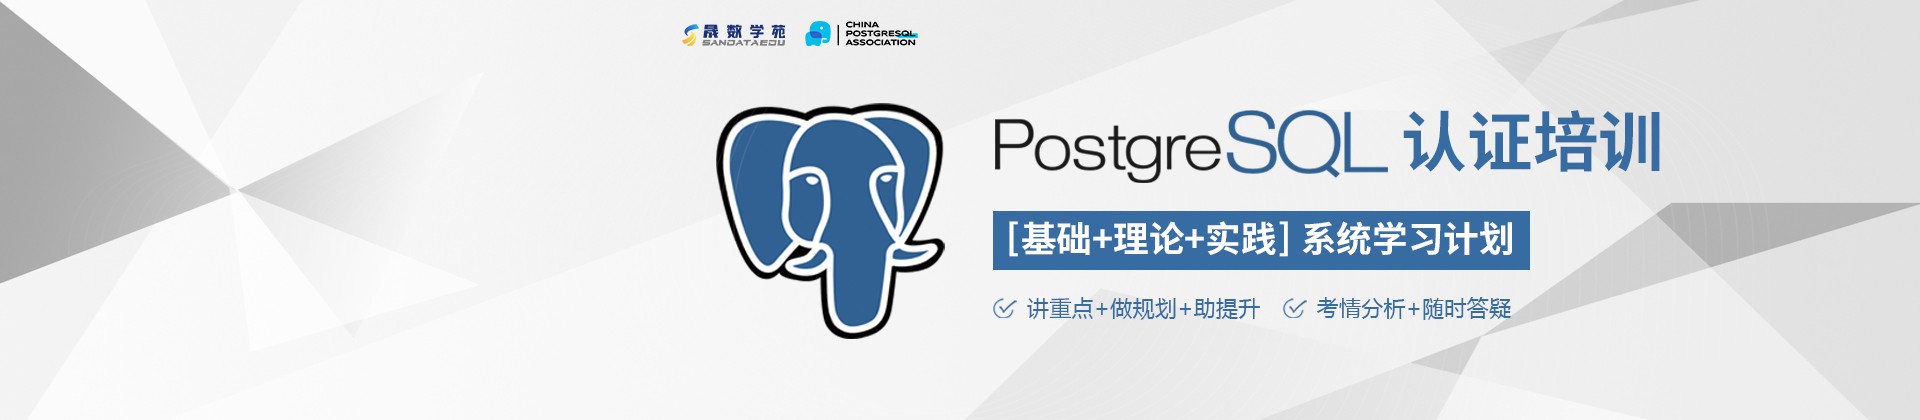 中国PostgreSQL认证